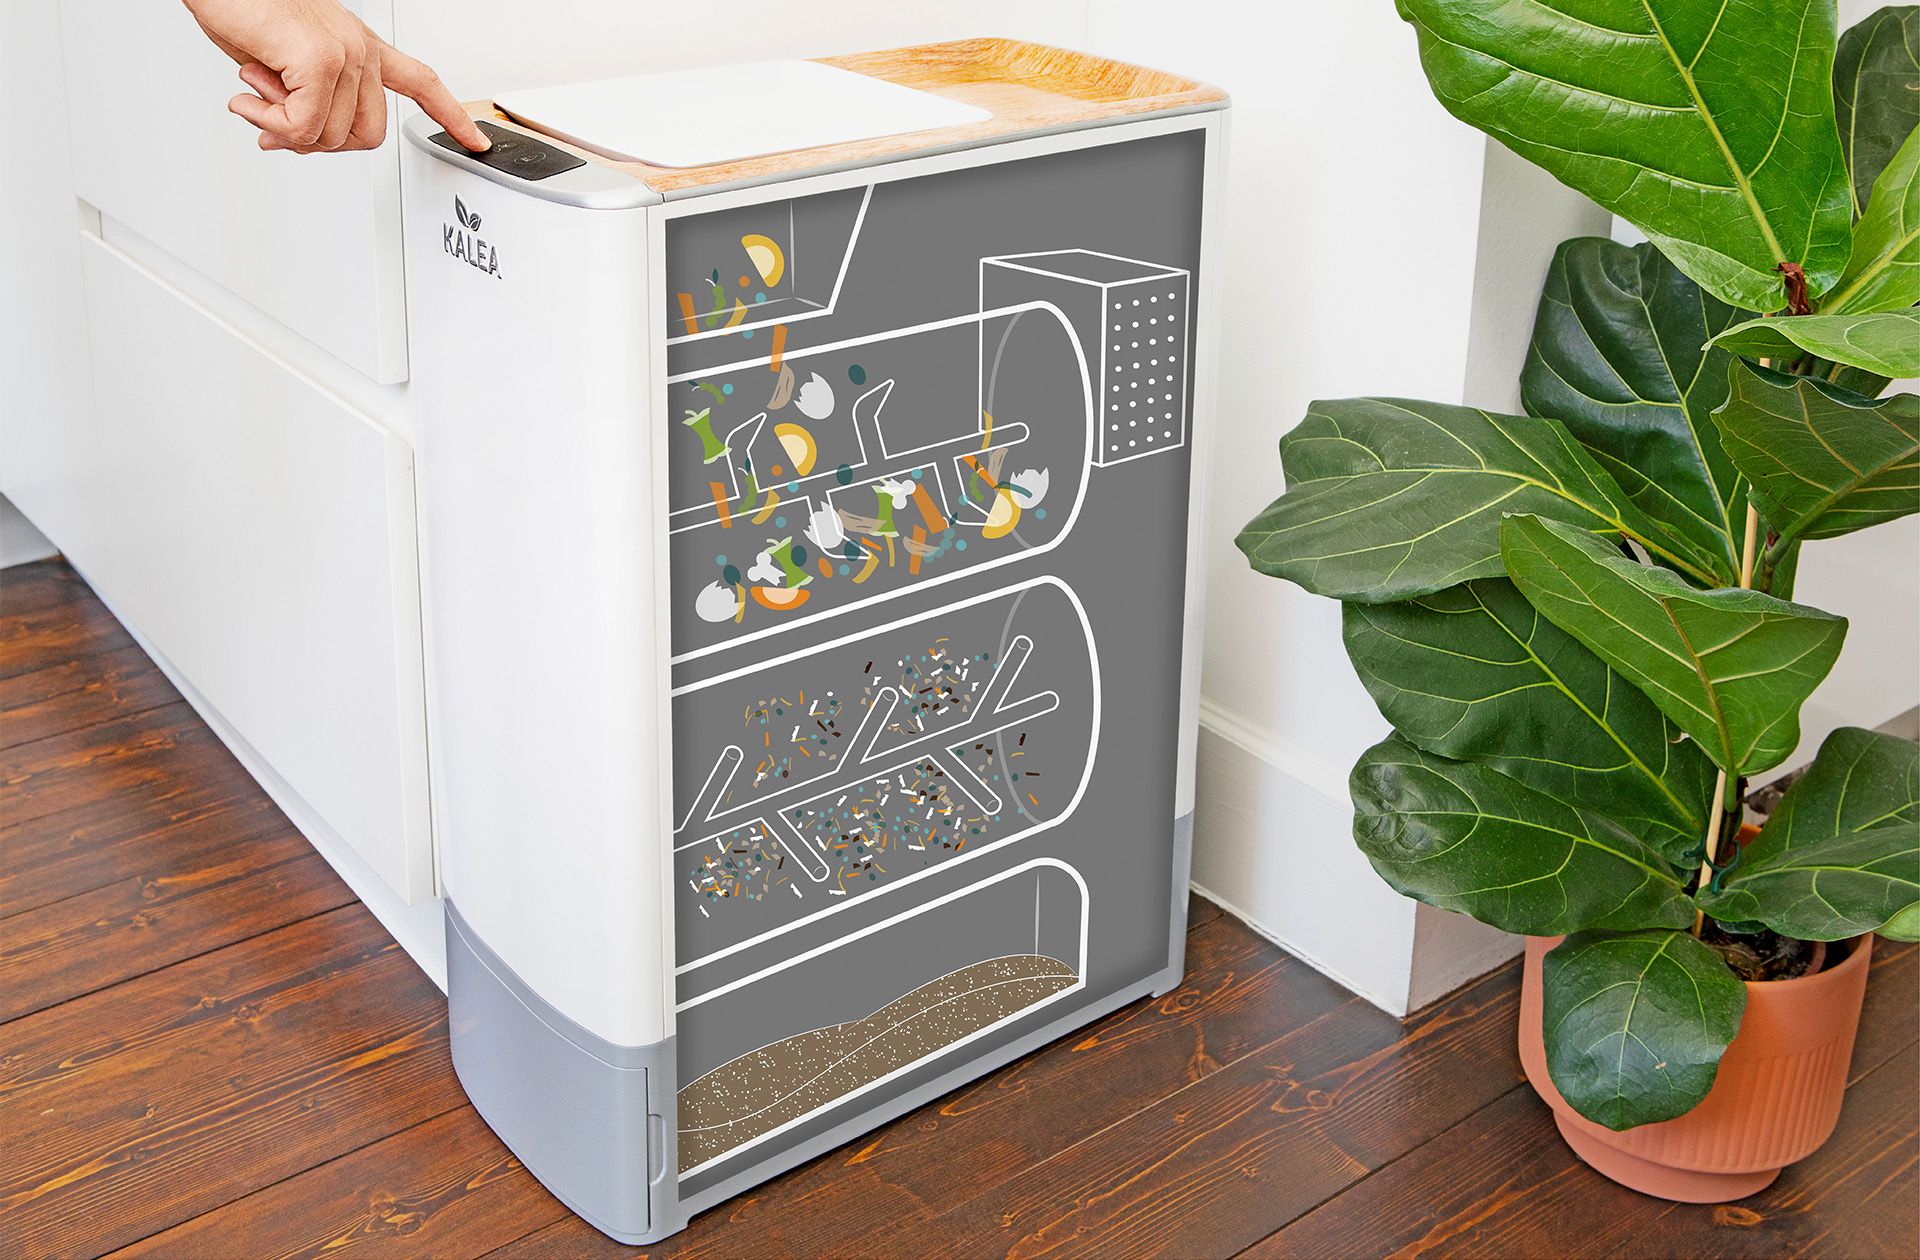 The Kalea smart kitchen appliance on the floor.